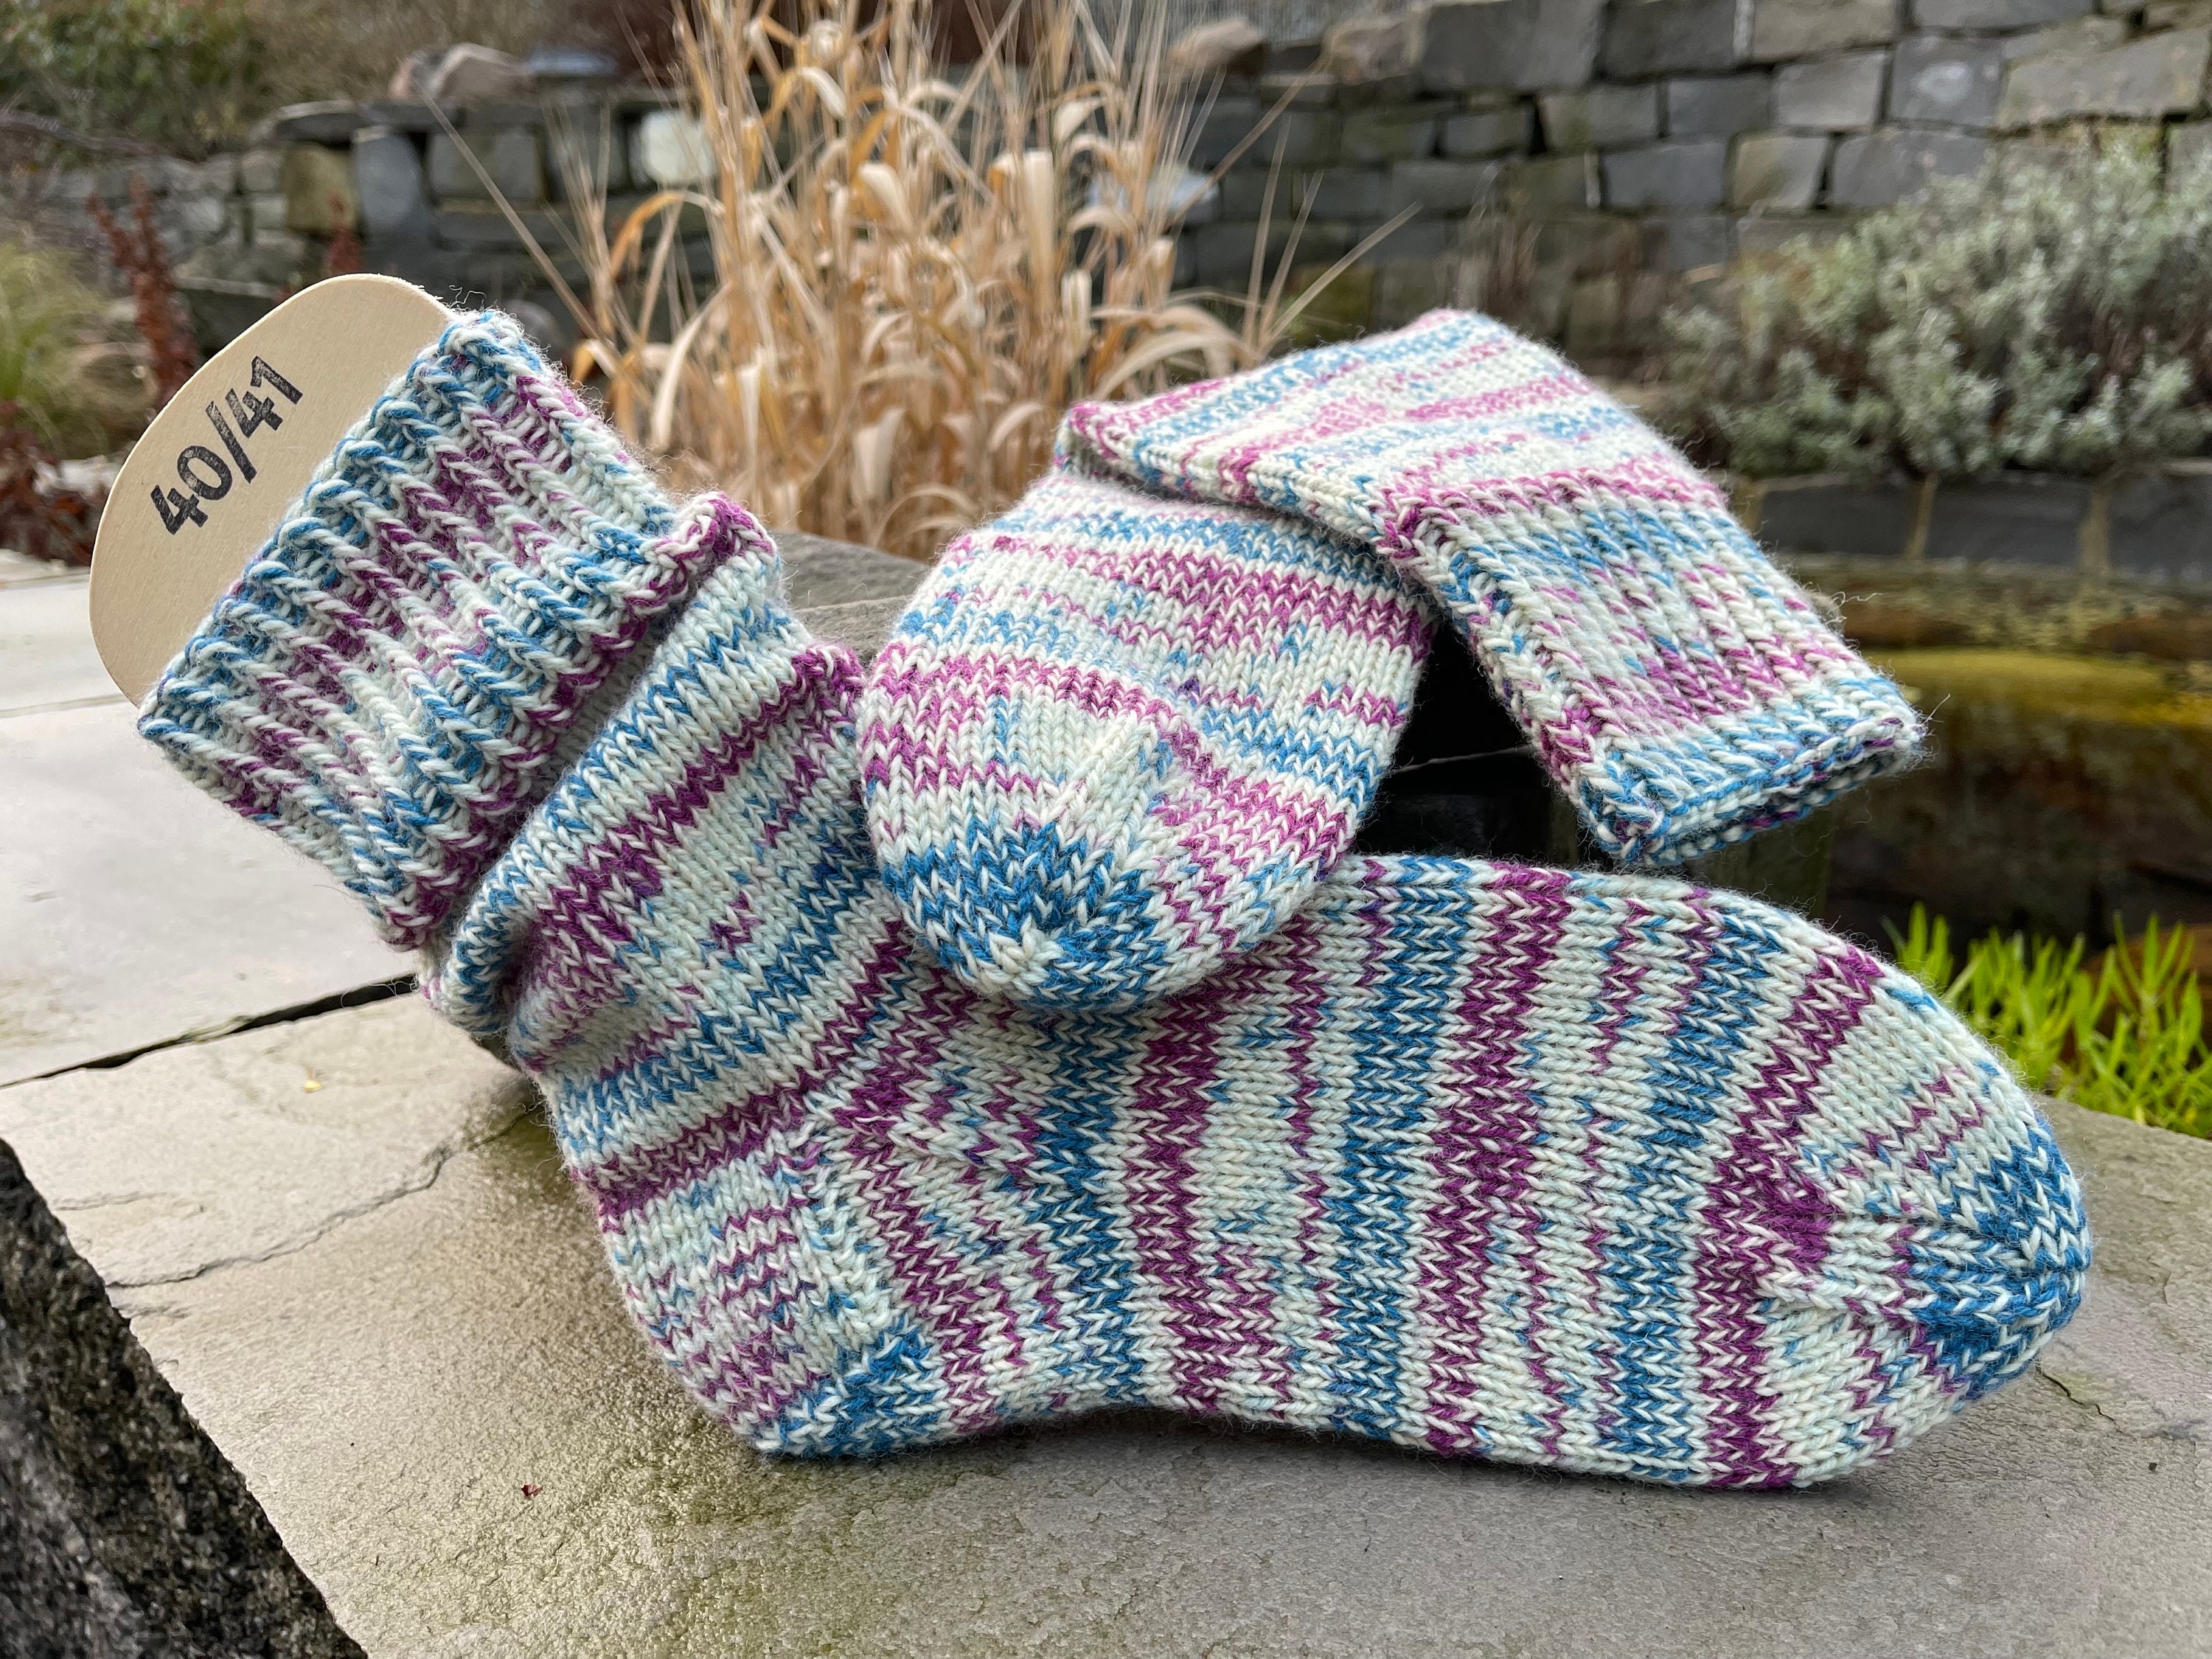 Calcetines de lana merina – elconsulado